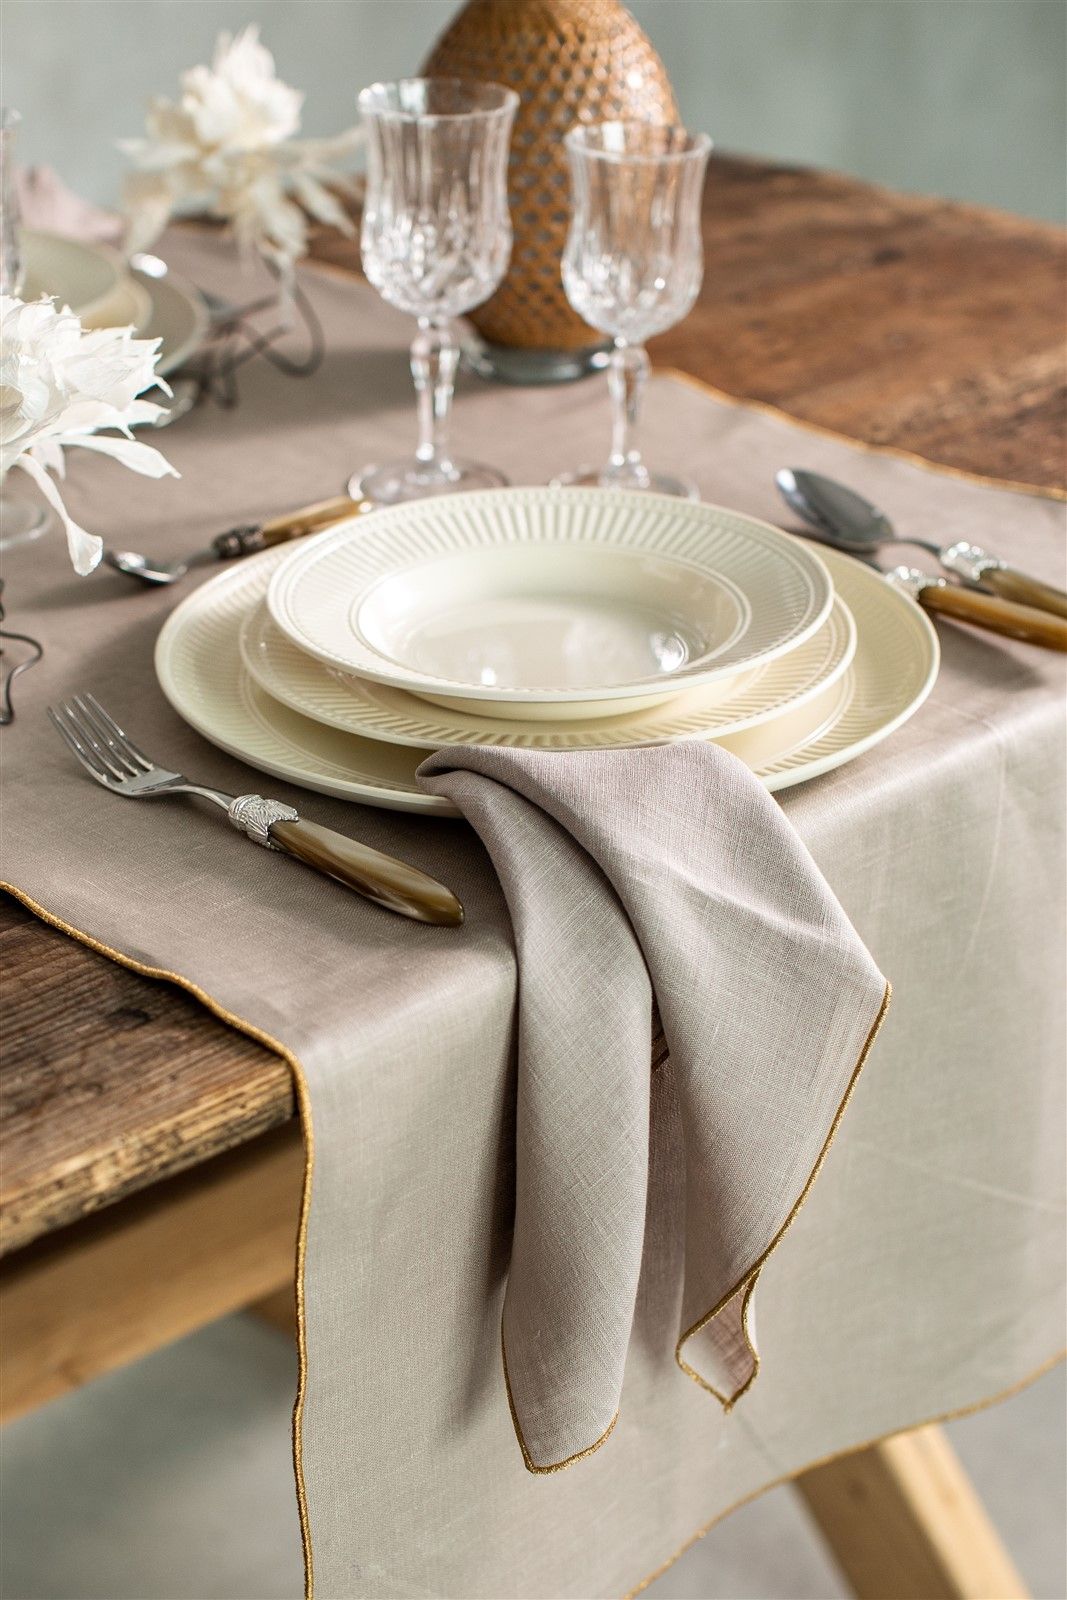 Kinsail Serviette - natural fibre napkins & table linen - Mungo